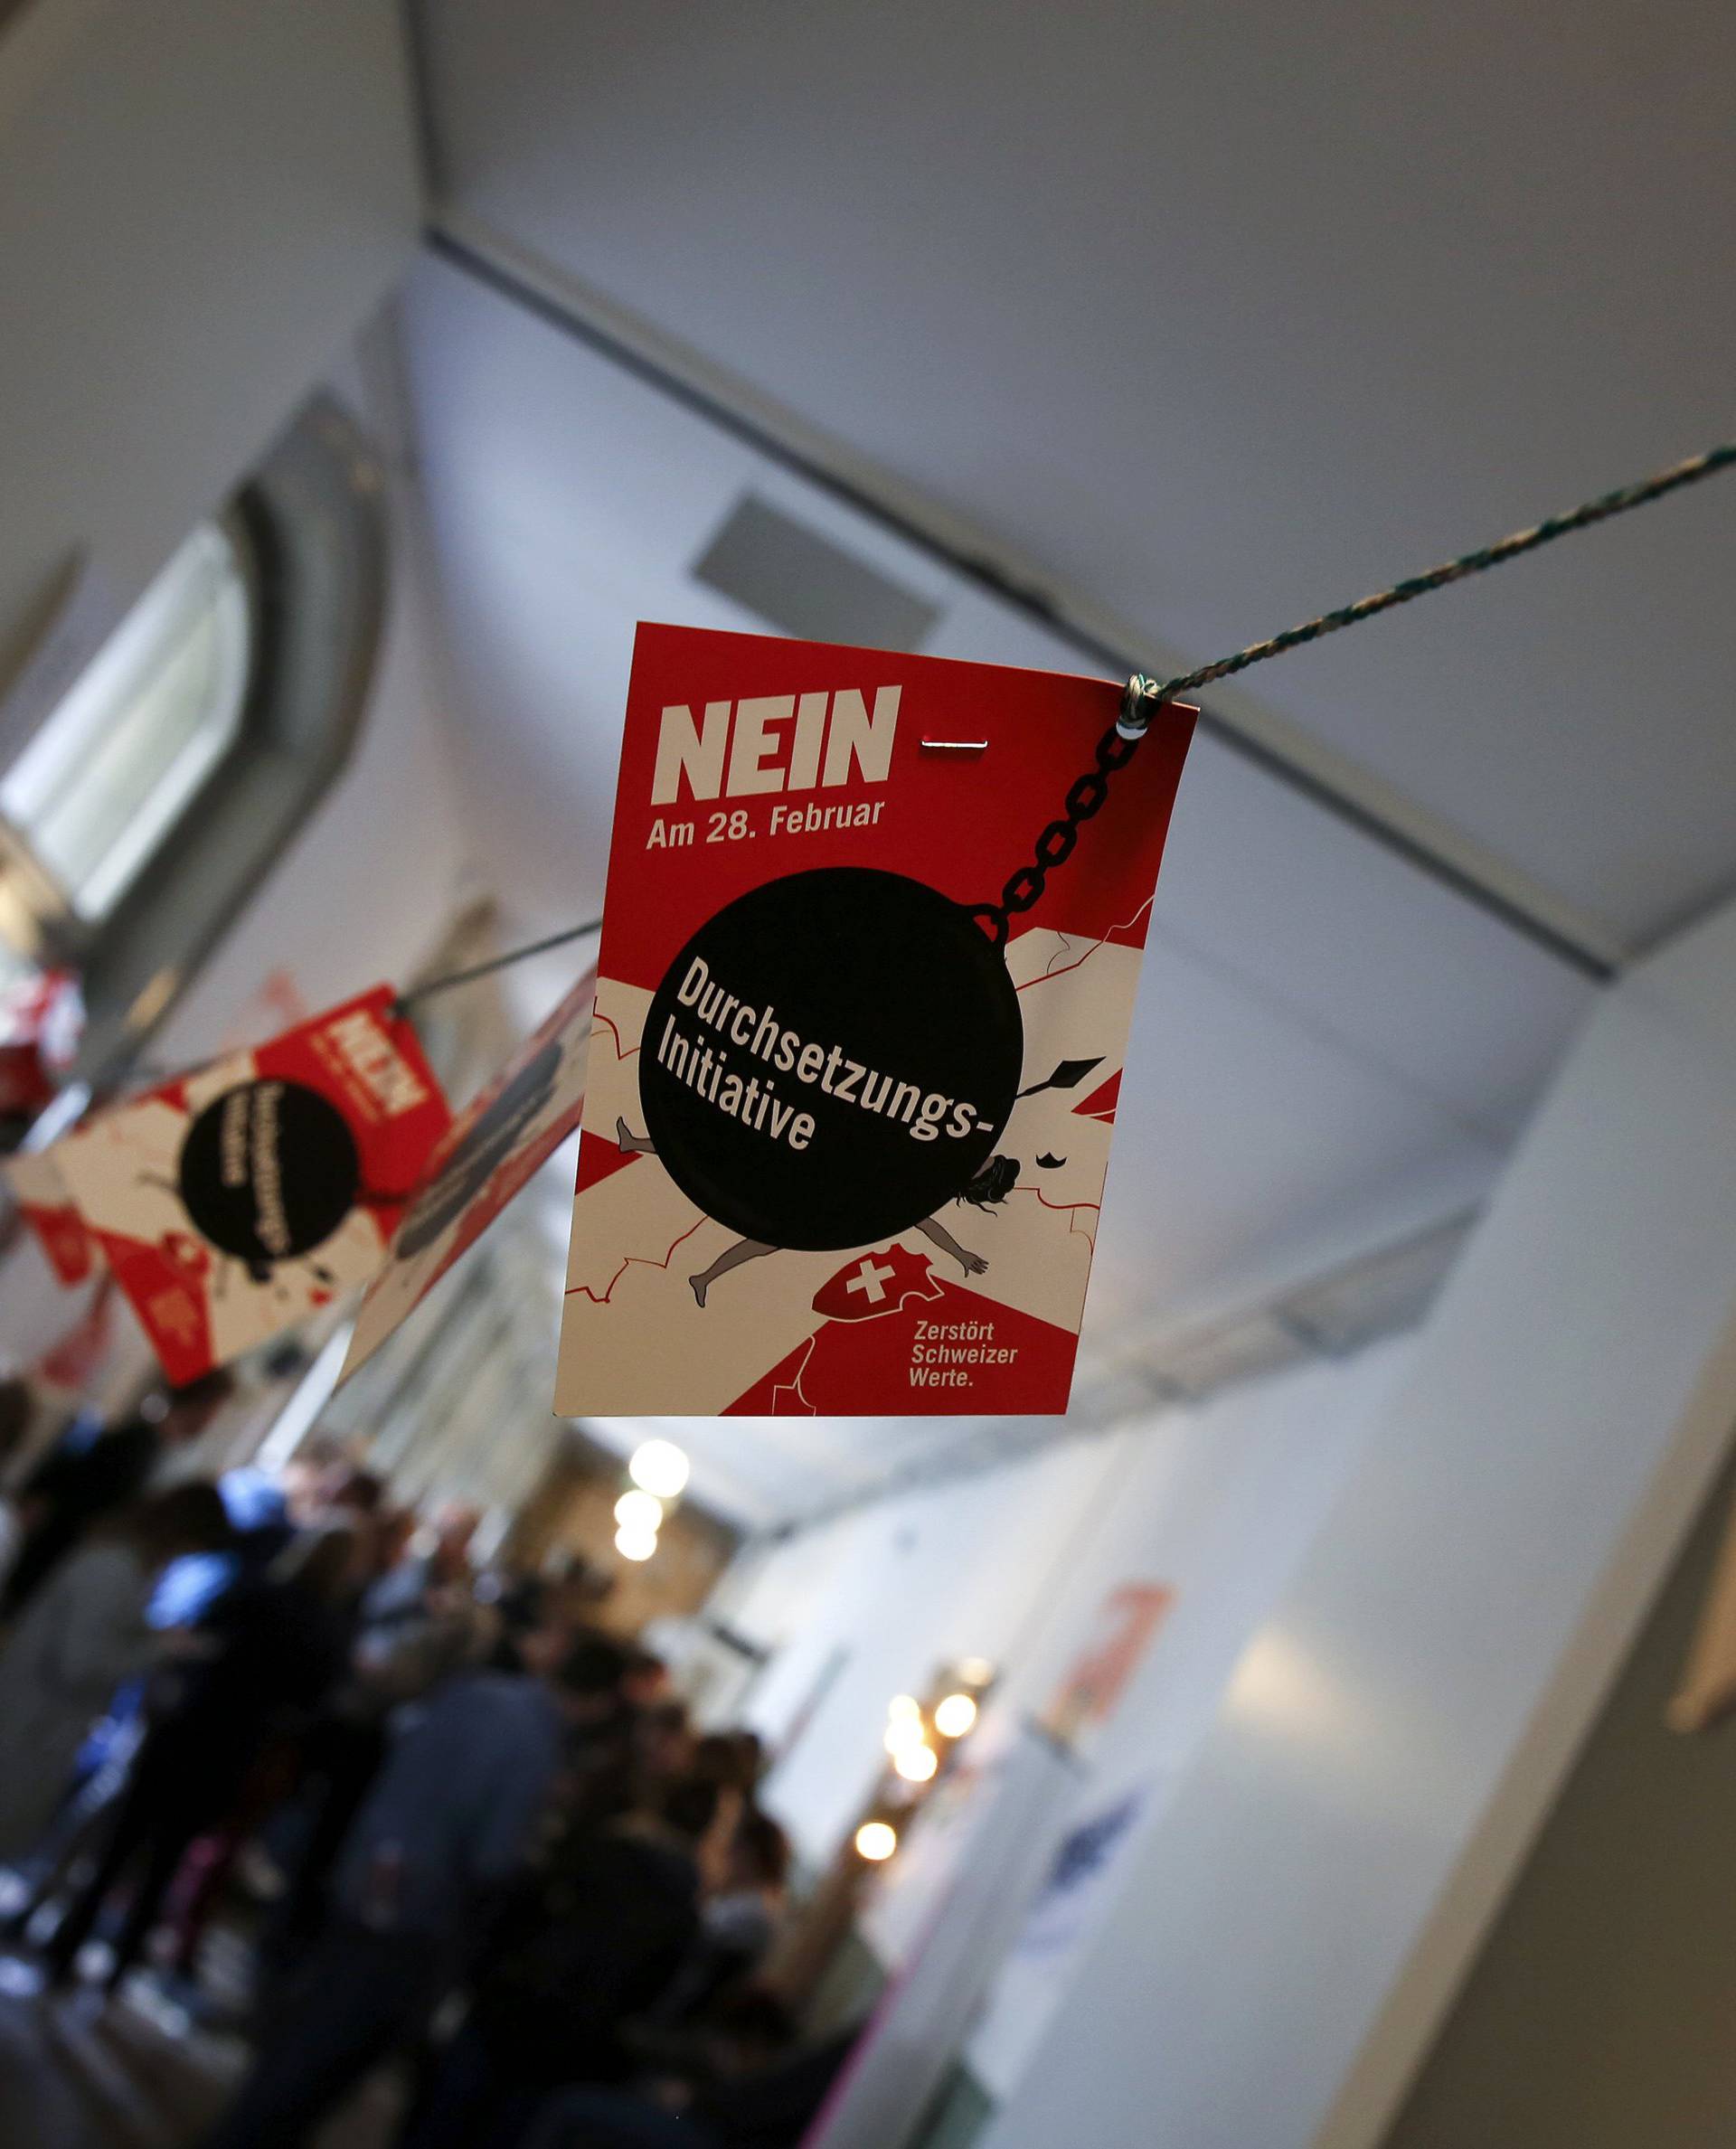 Švicarci na referendumu protiv zakona o deportaciji stranaca